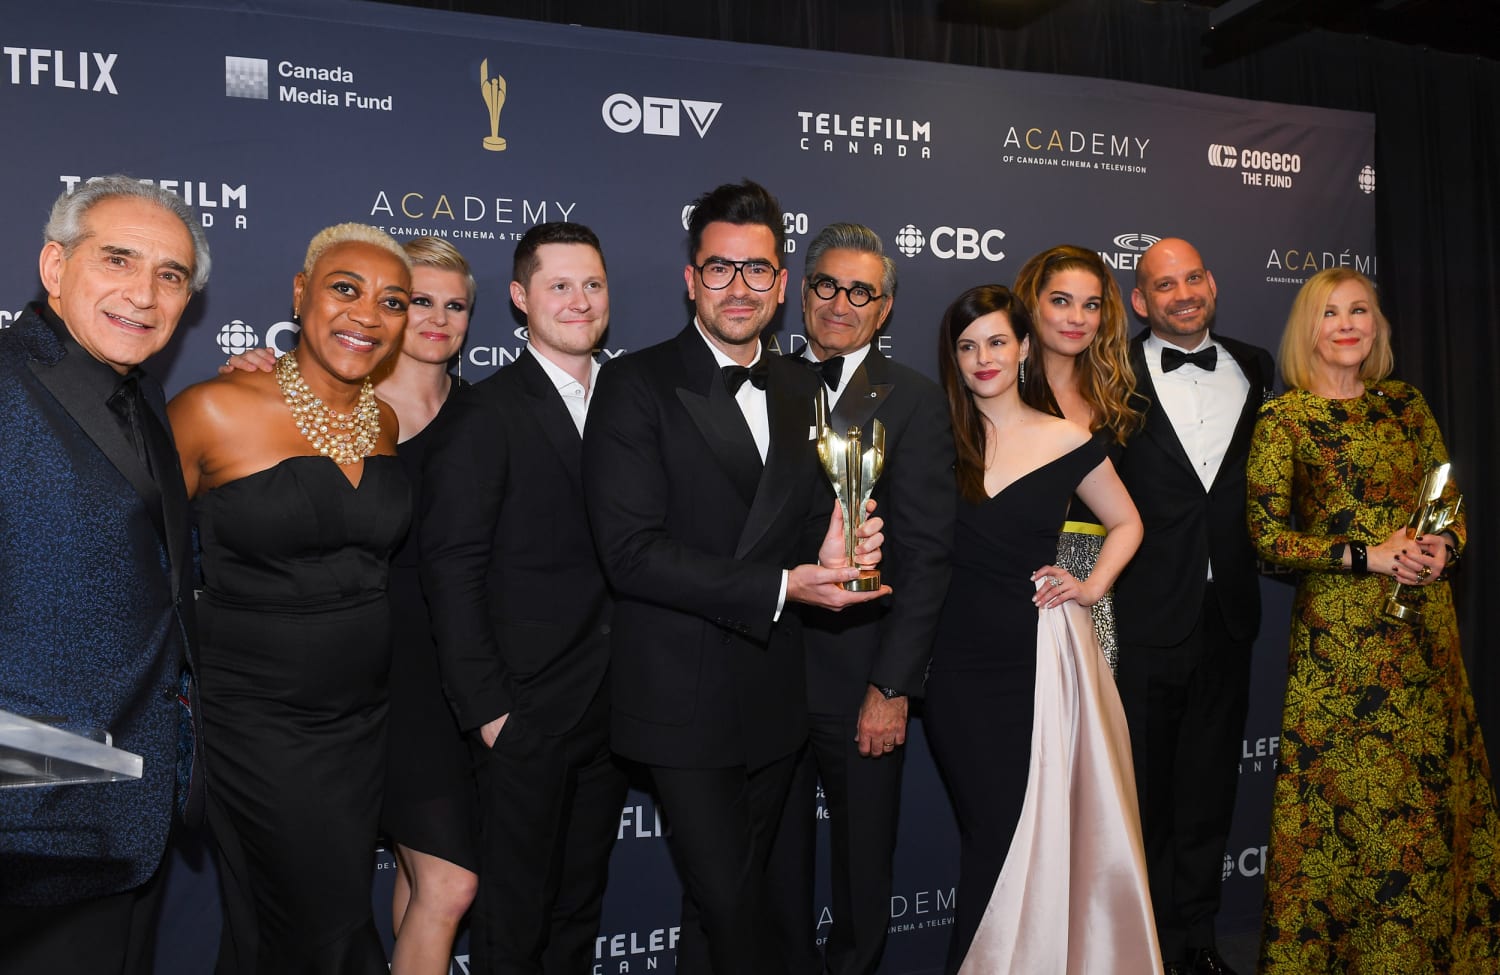 Emmys 2020 winners: 'Schitt's Creek' sweeps comedy categories in triumphant  swan song